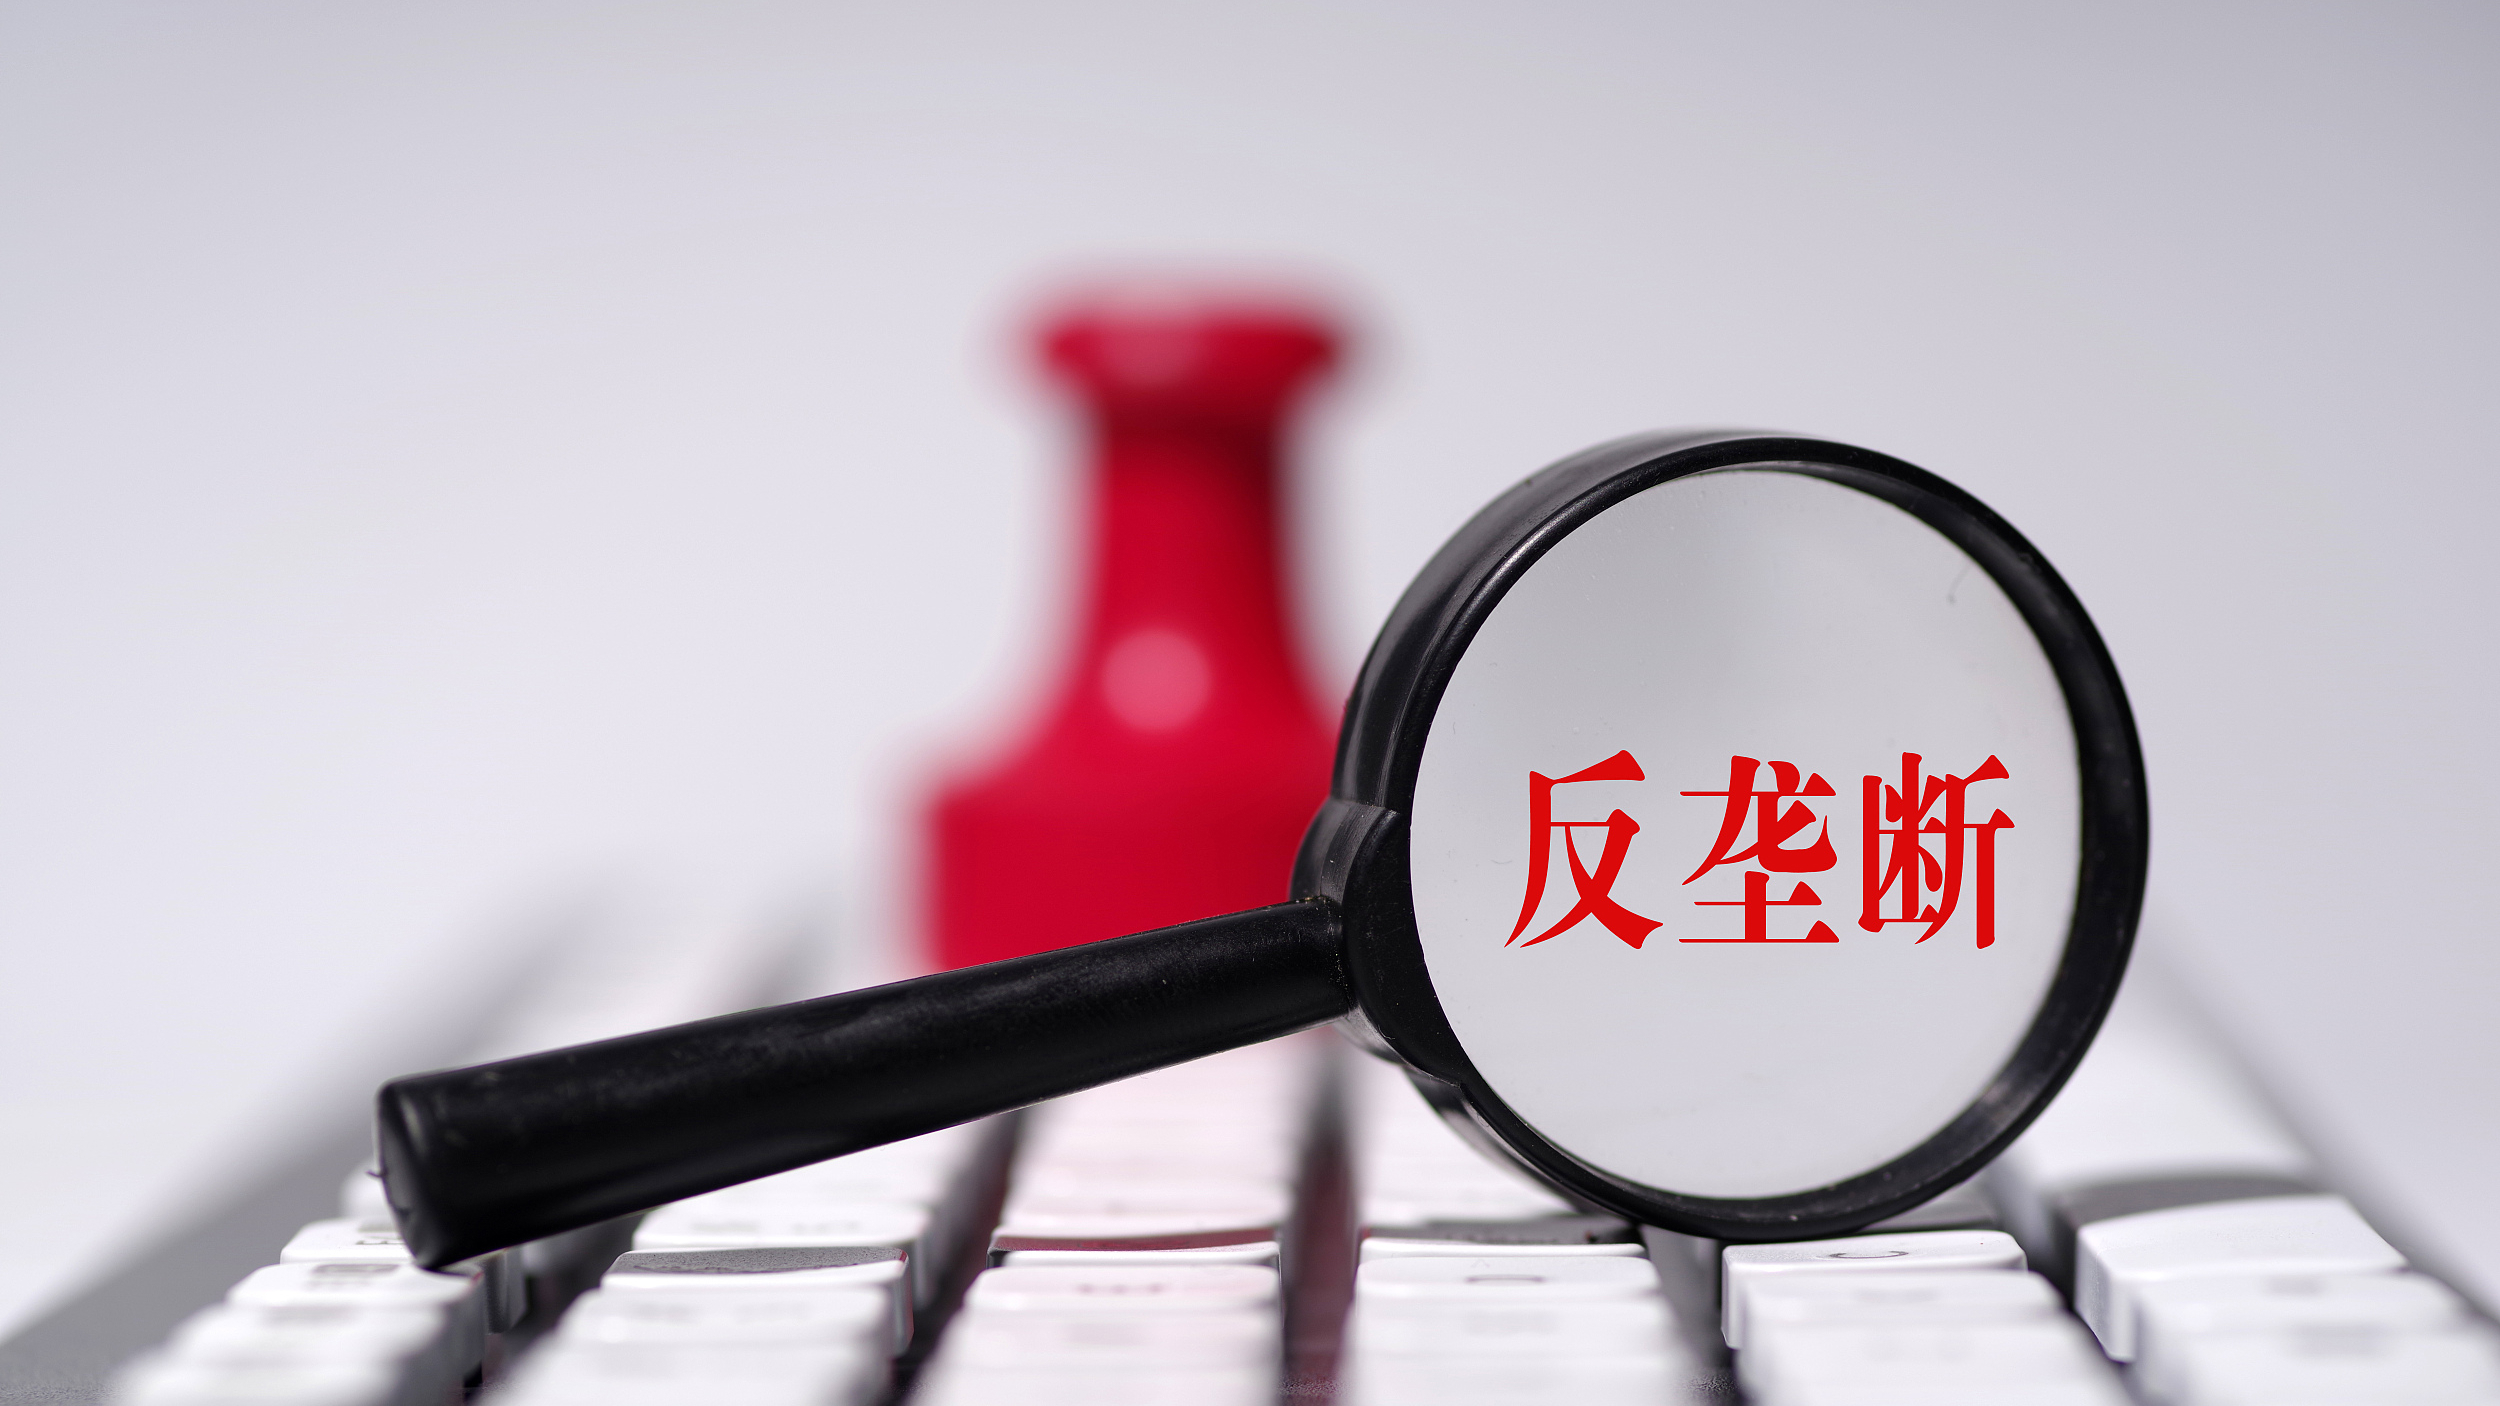 《北京市平台经济领域反垄断合规指引》正式对外发布